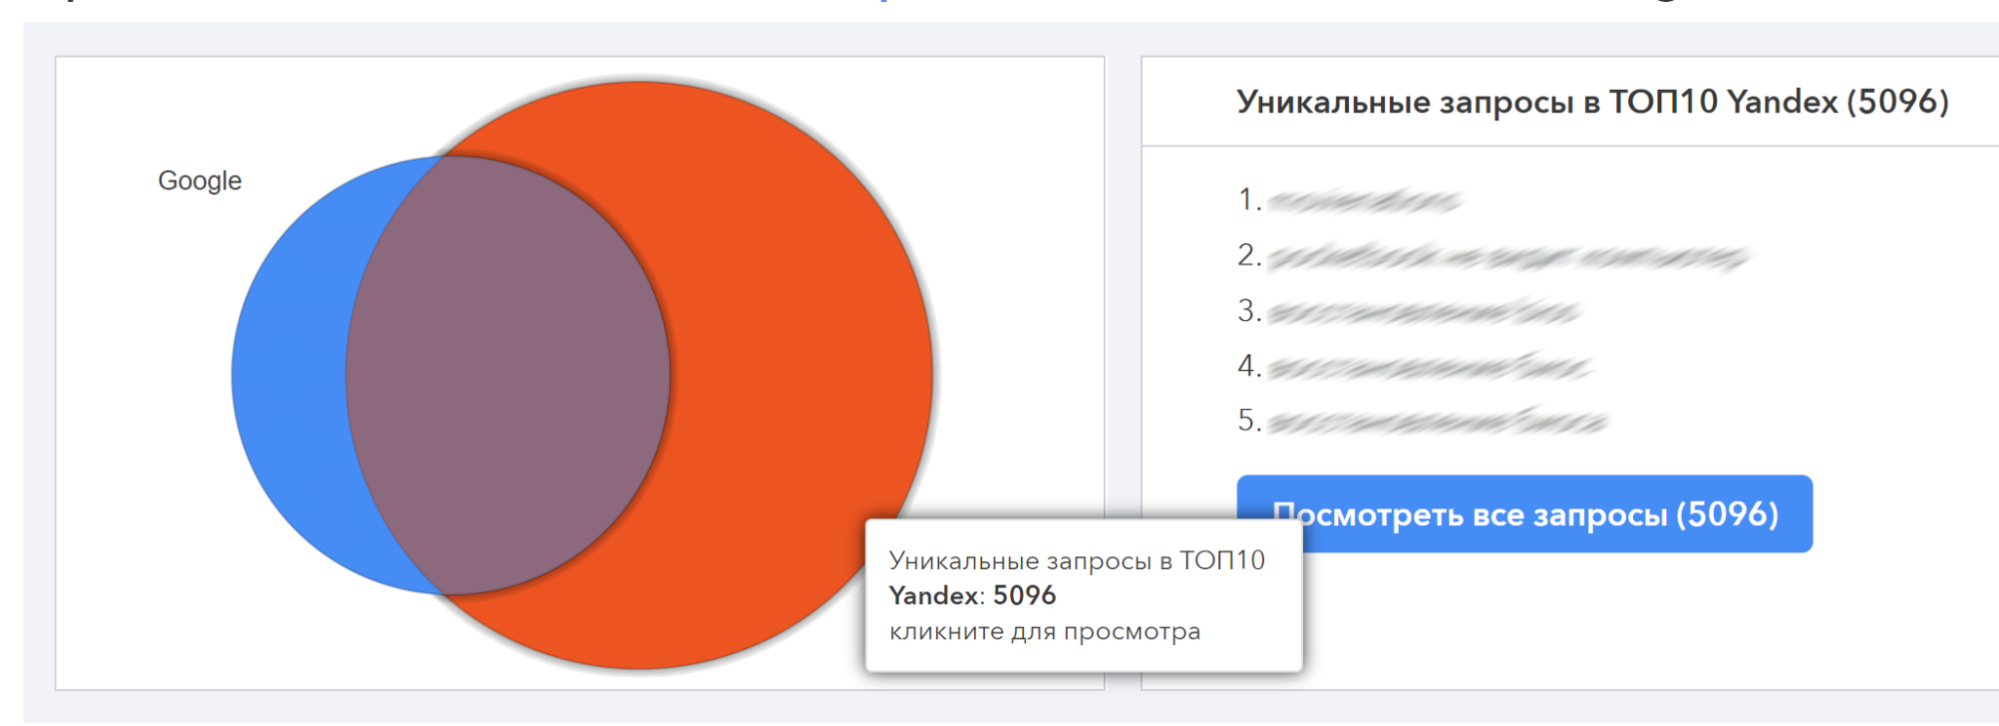 Получаем уникальные запросы в Топ-10 для Yandex (с учетом пересечения с Google)